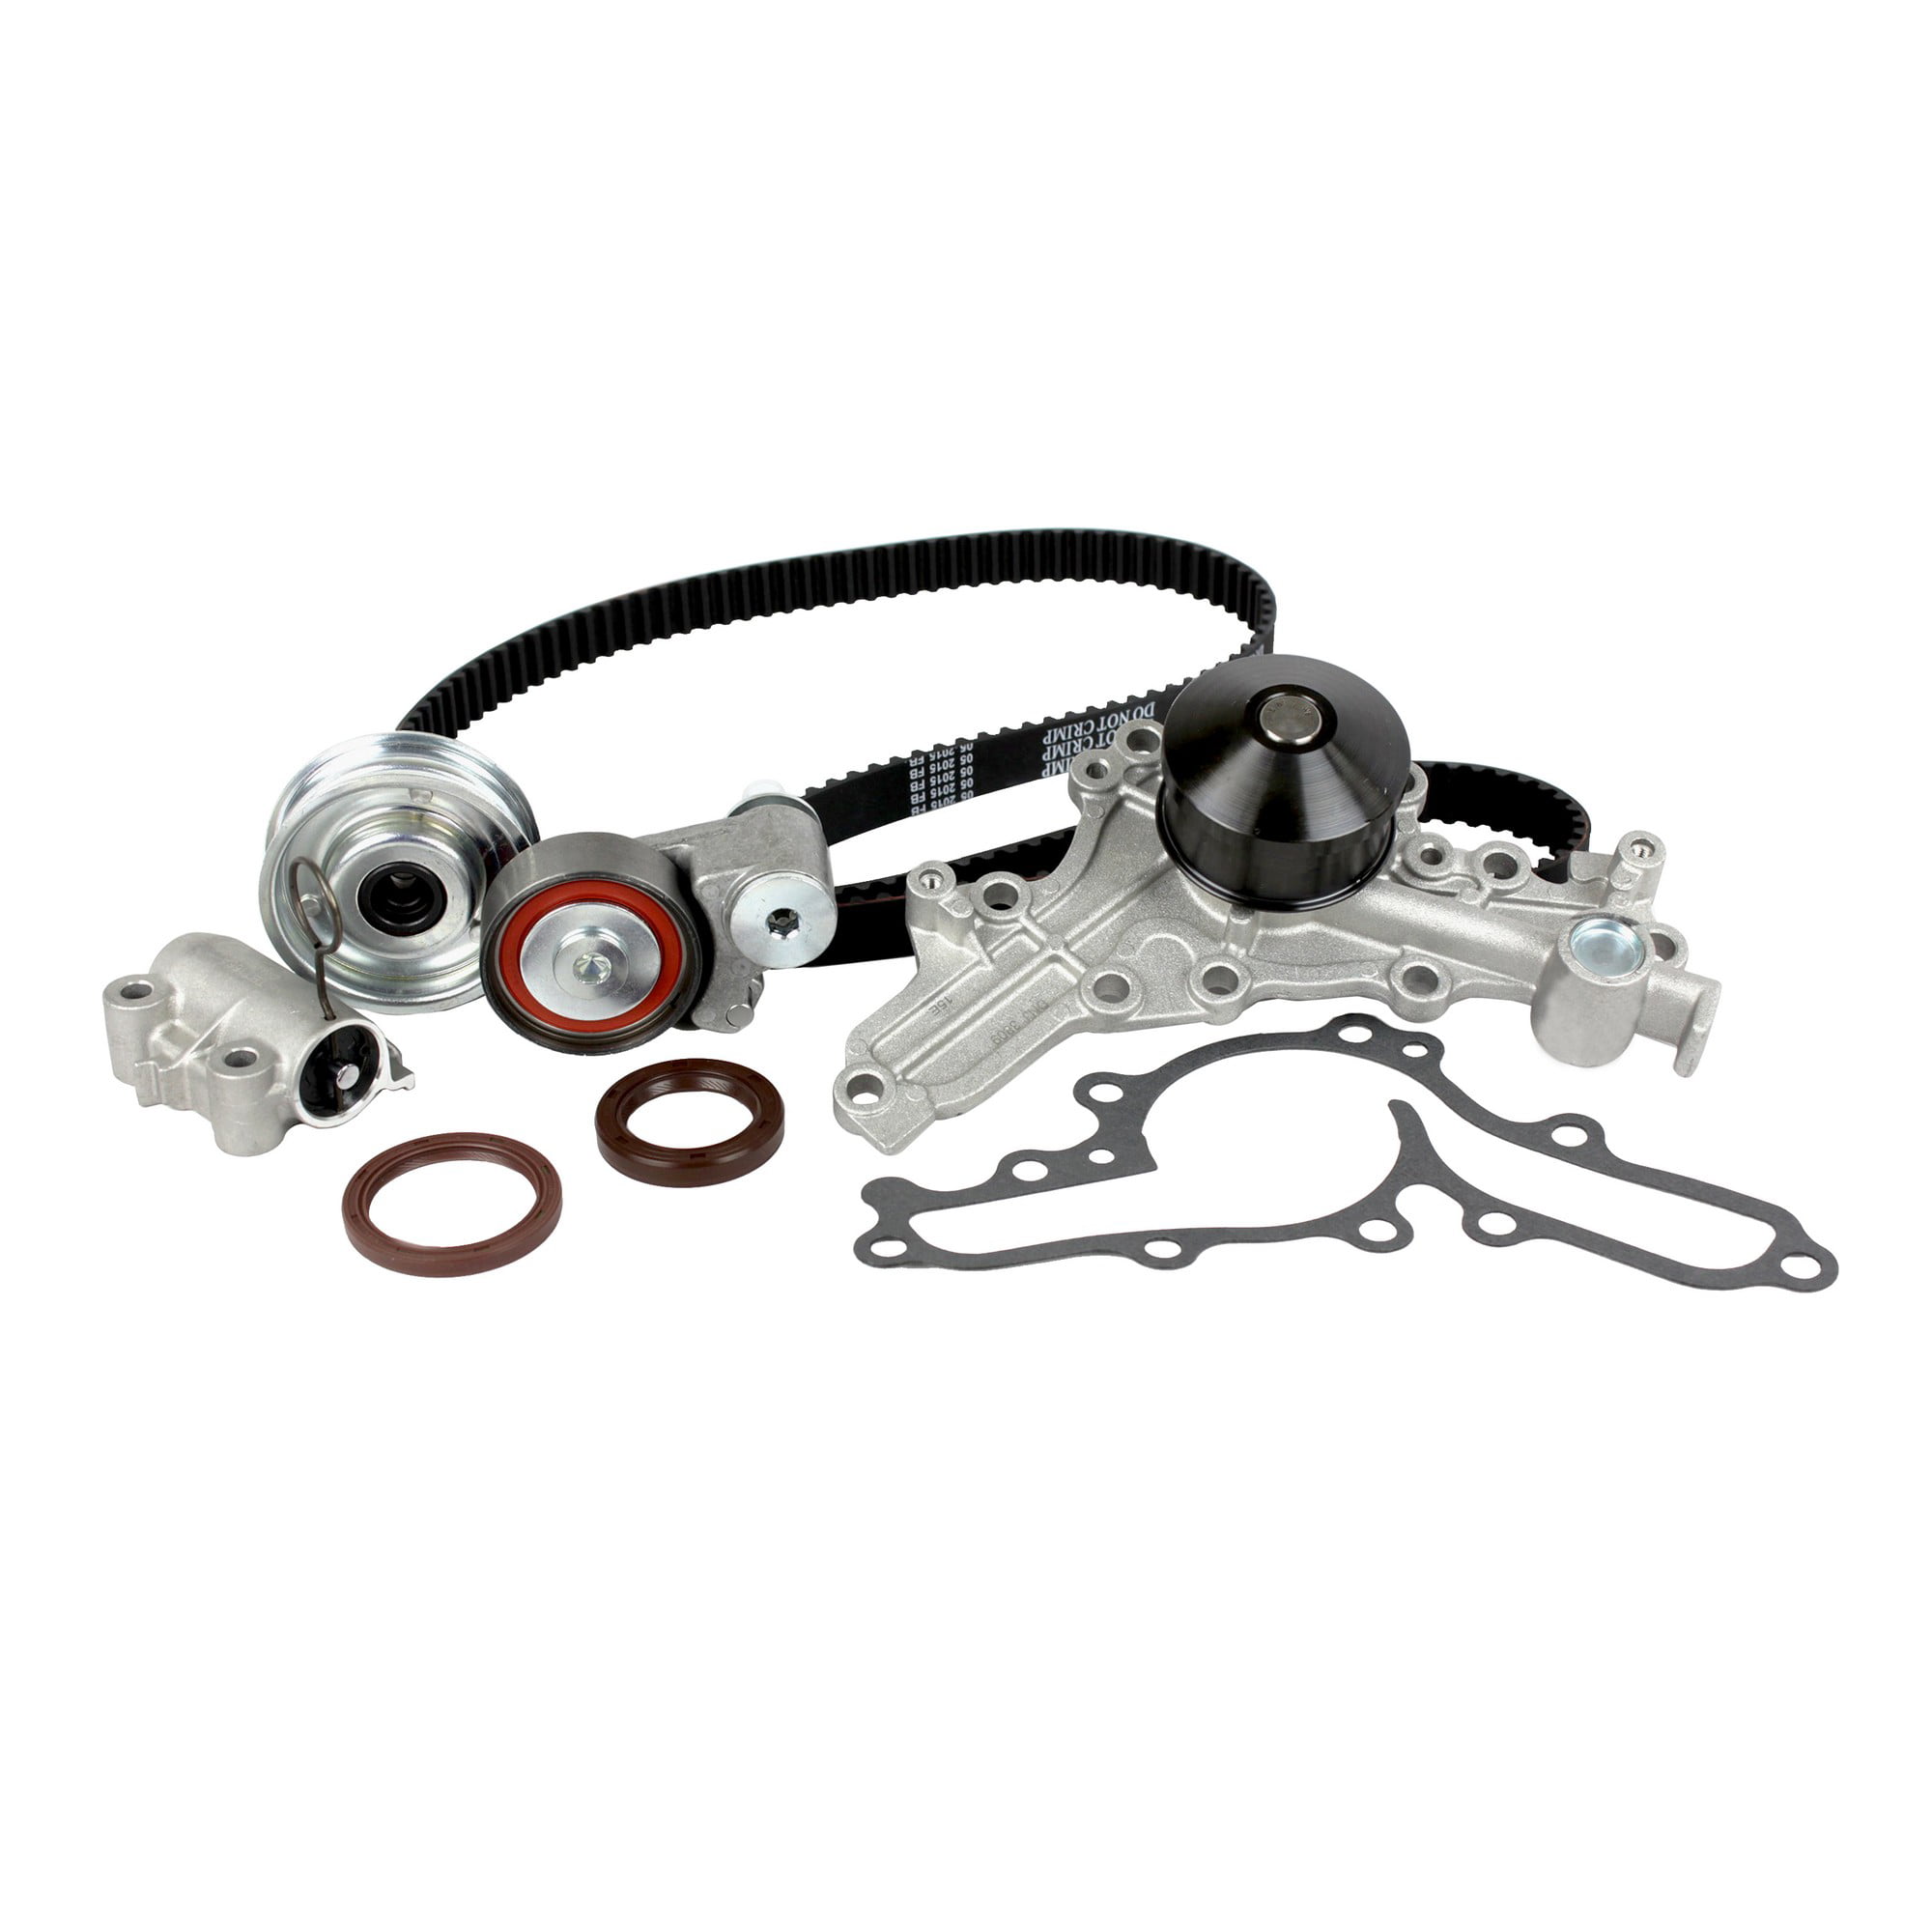 Timing Belt Kit Water Pump Fits 07-15 Mitsubishi Outlander 3.0L V6 SOHC 24v